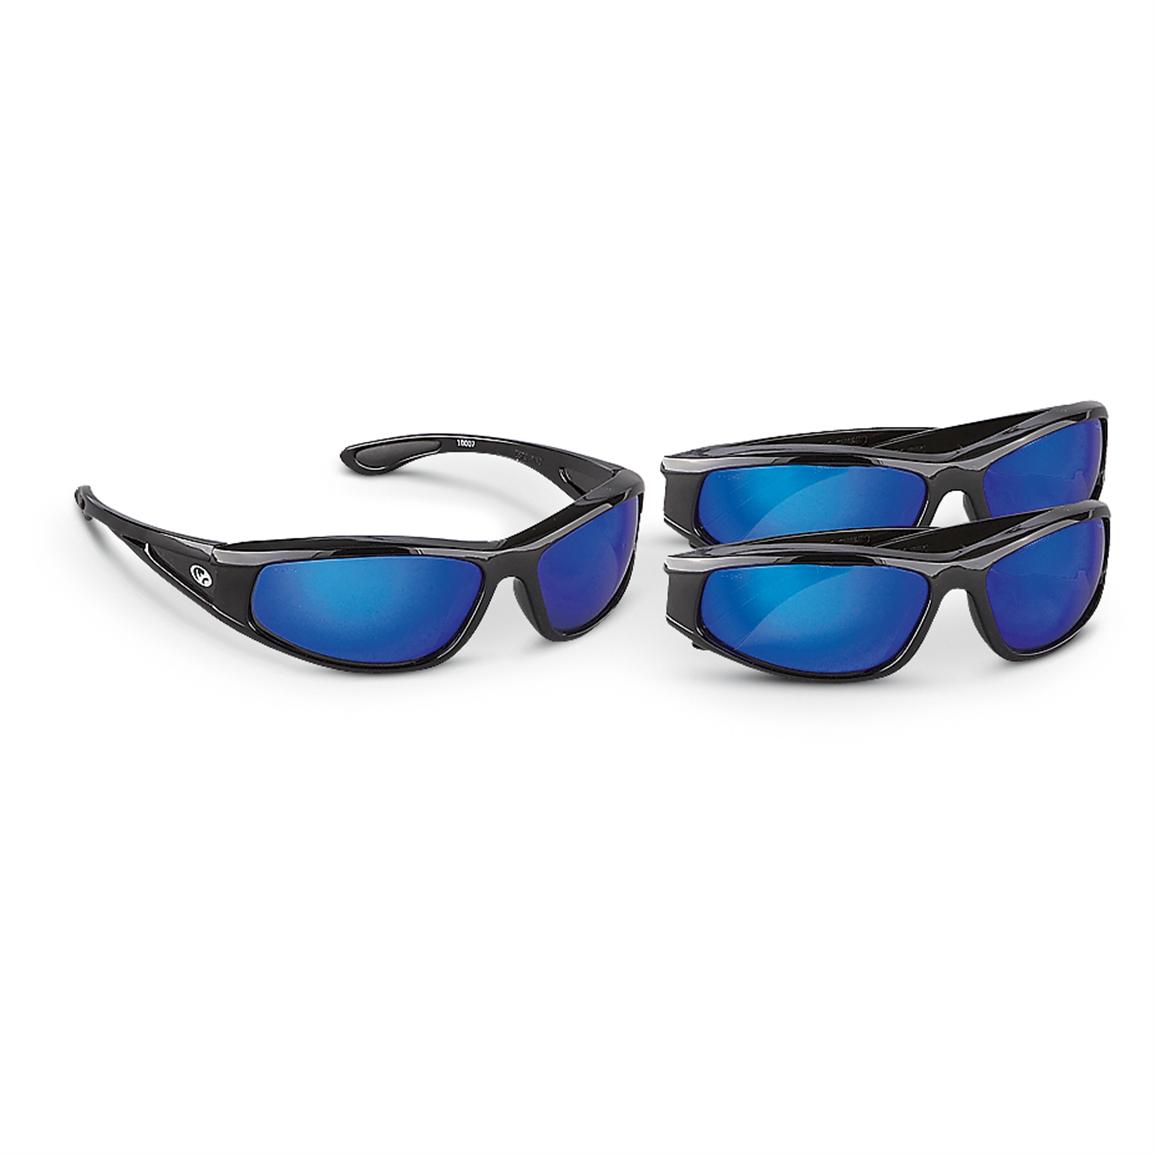 3 Black Rhino® Pro Safety Sunglasses, Smoke - 185376, Sunglasses